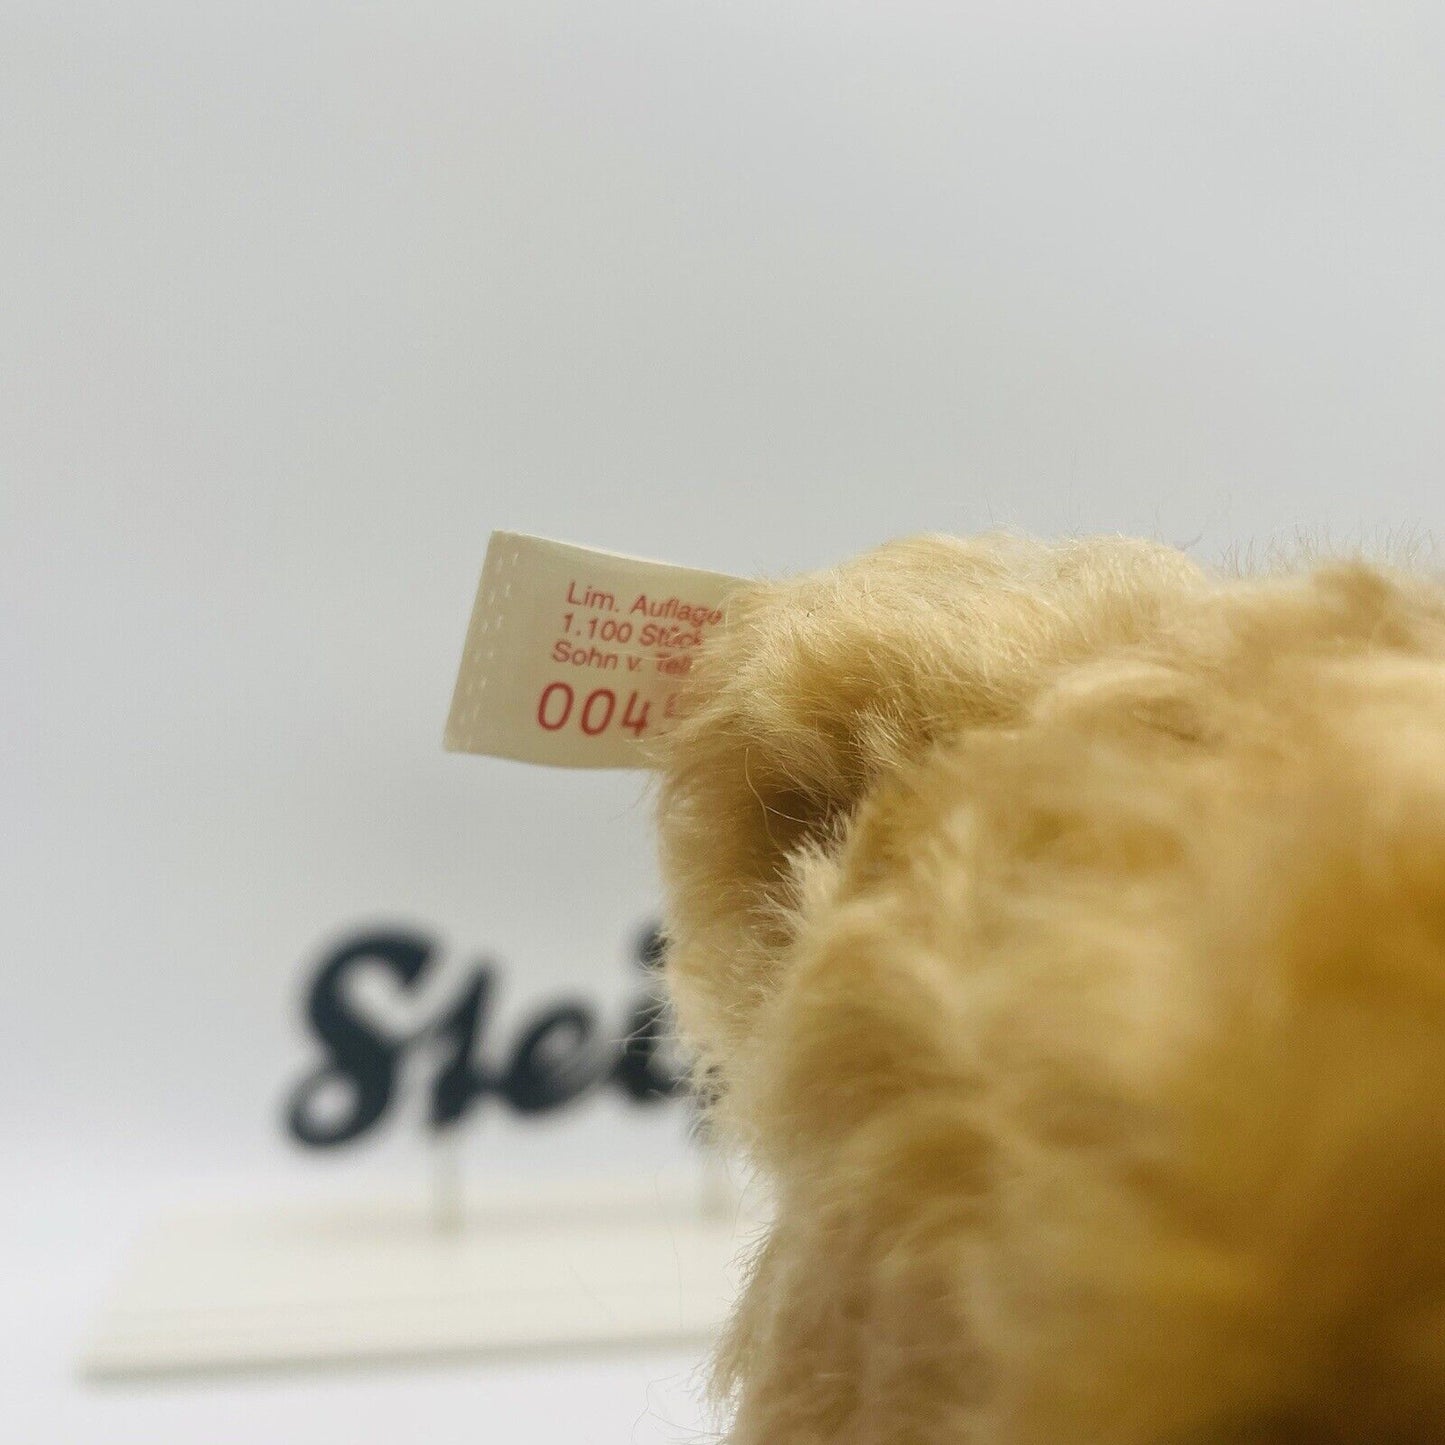 Steiff Teddybären Wilhelm Tell mit Stimme 996528 limitiert 1100 für Märklin